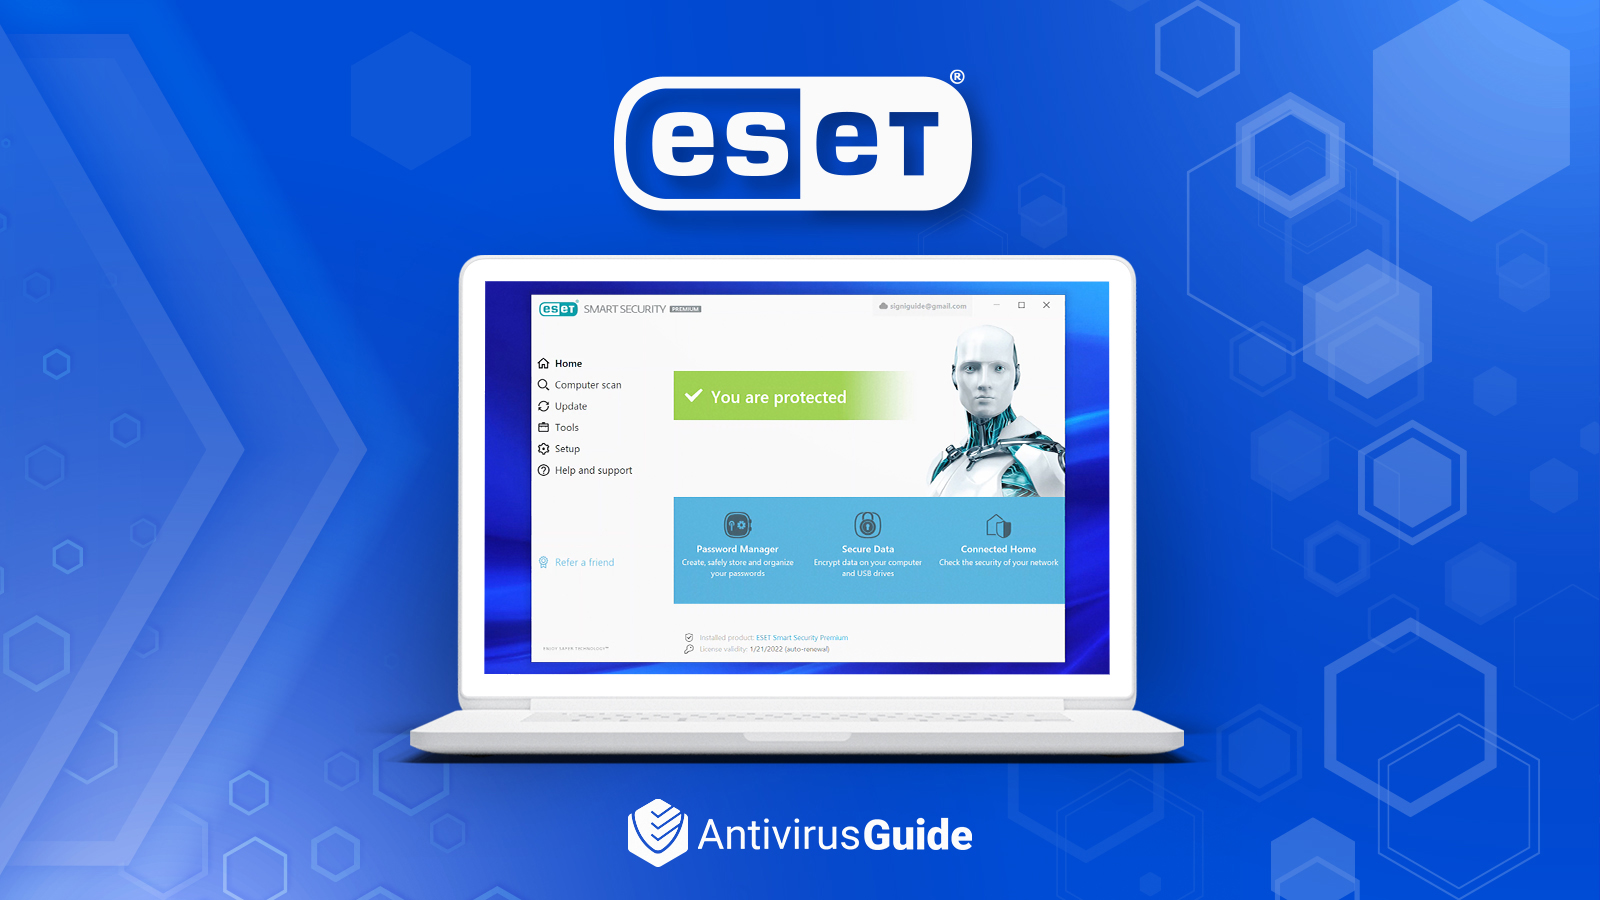 Testbericht zu ESET Antivirus: Wie zuverlässig ist das Programm? [2022]